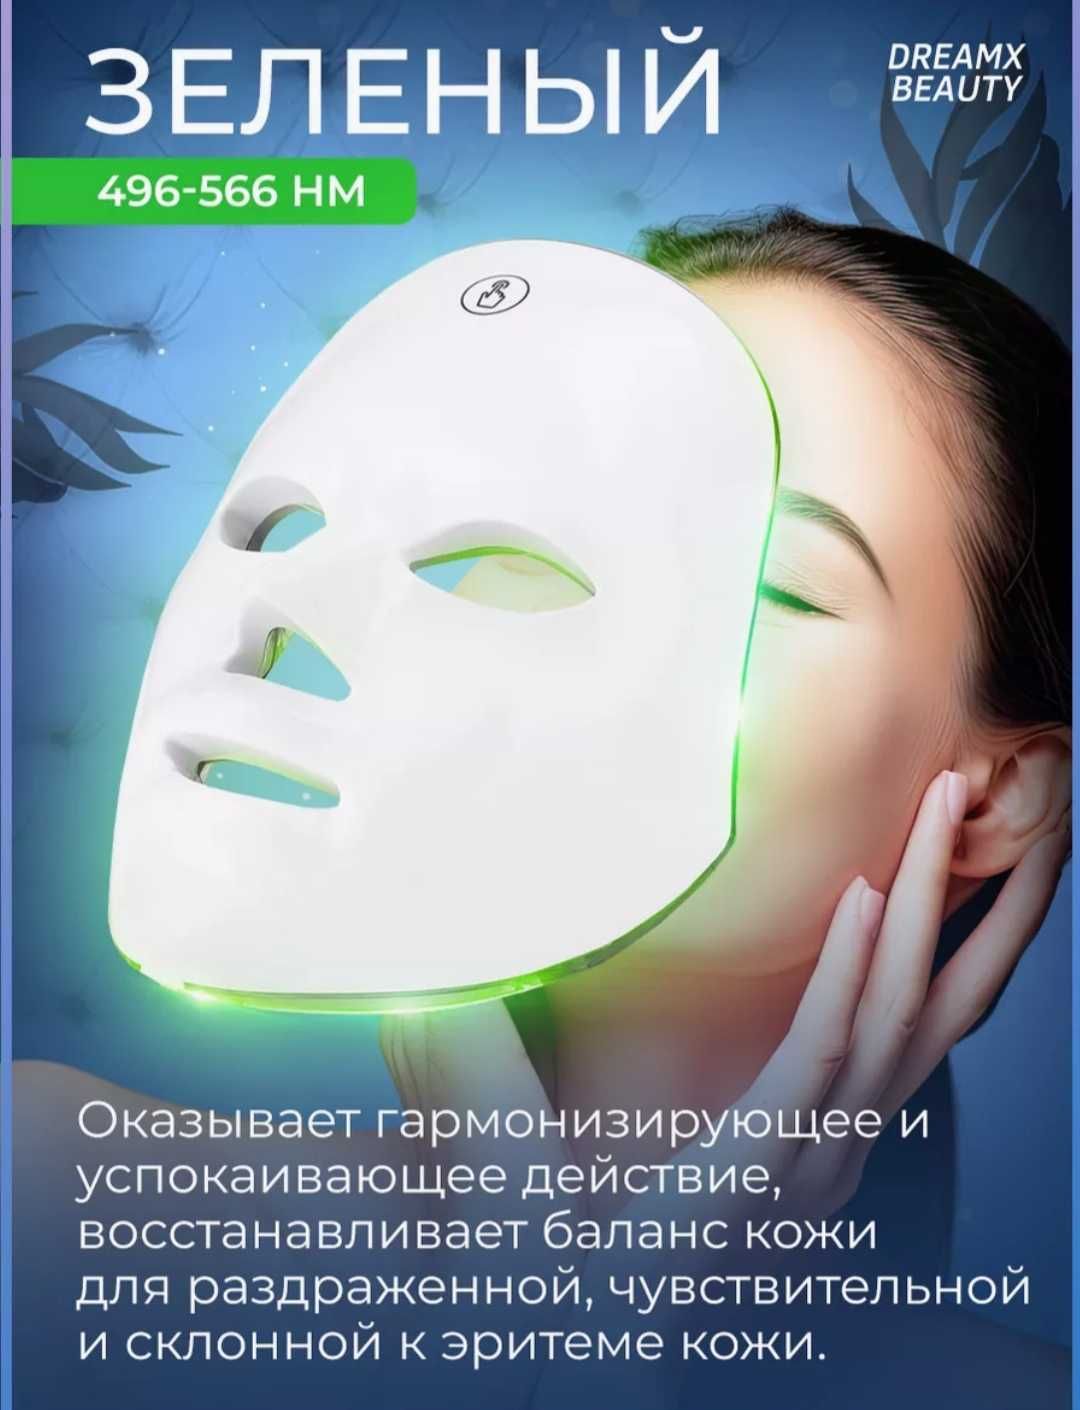 ЛЭД маска для улучшения качества кожи